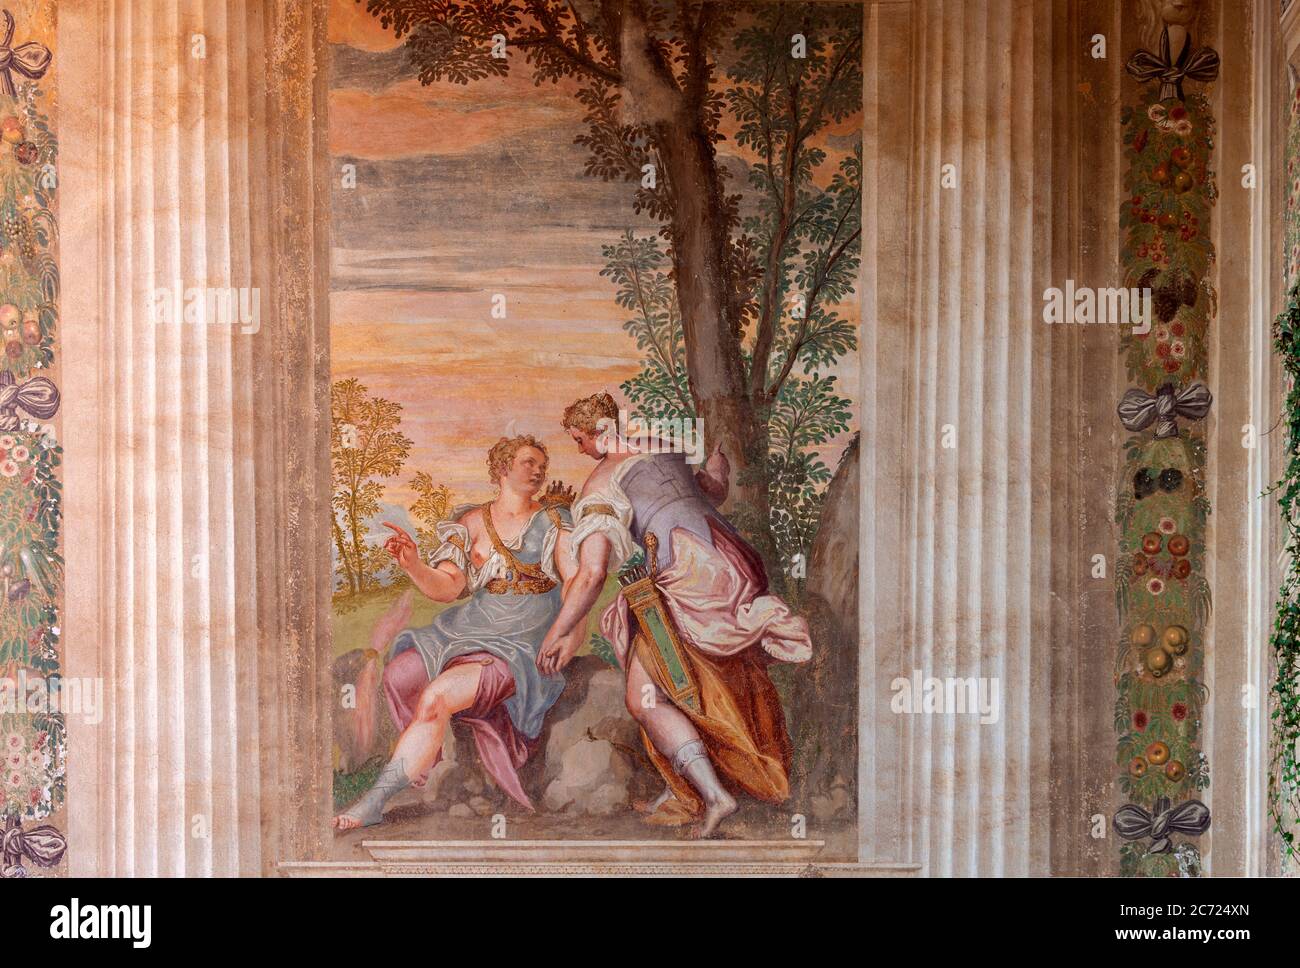 Italie Veneto Fanzolo Villa Emo - Andrea Palladio architecte - la Loggia - fresques de Battista Zelotti Banque D'Images